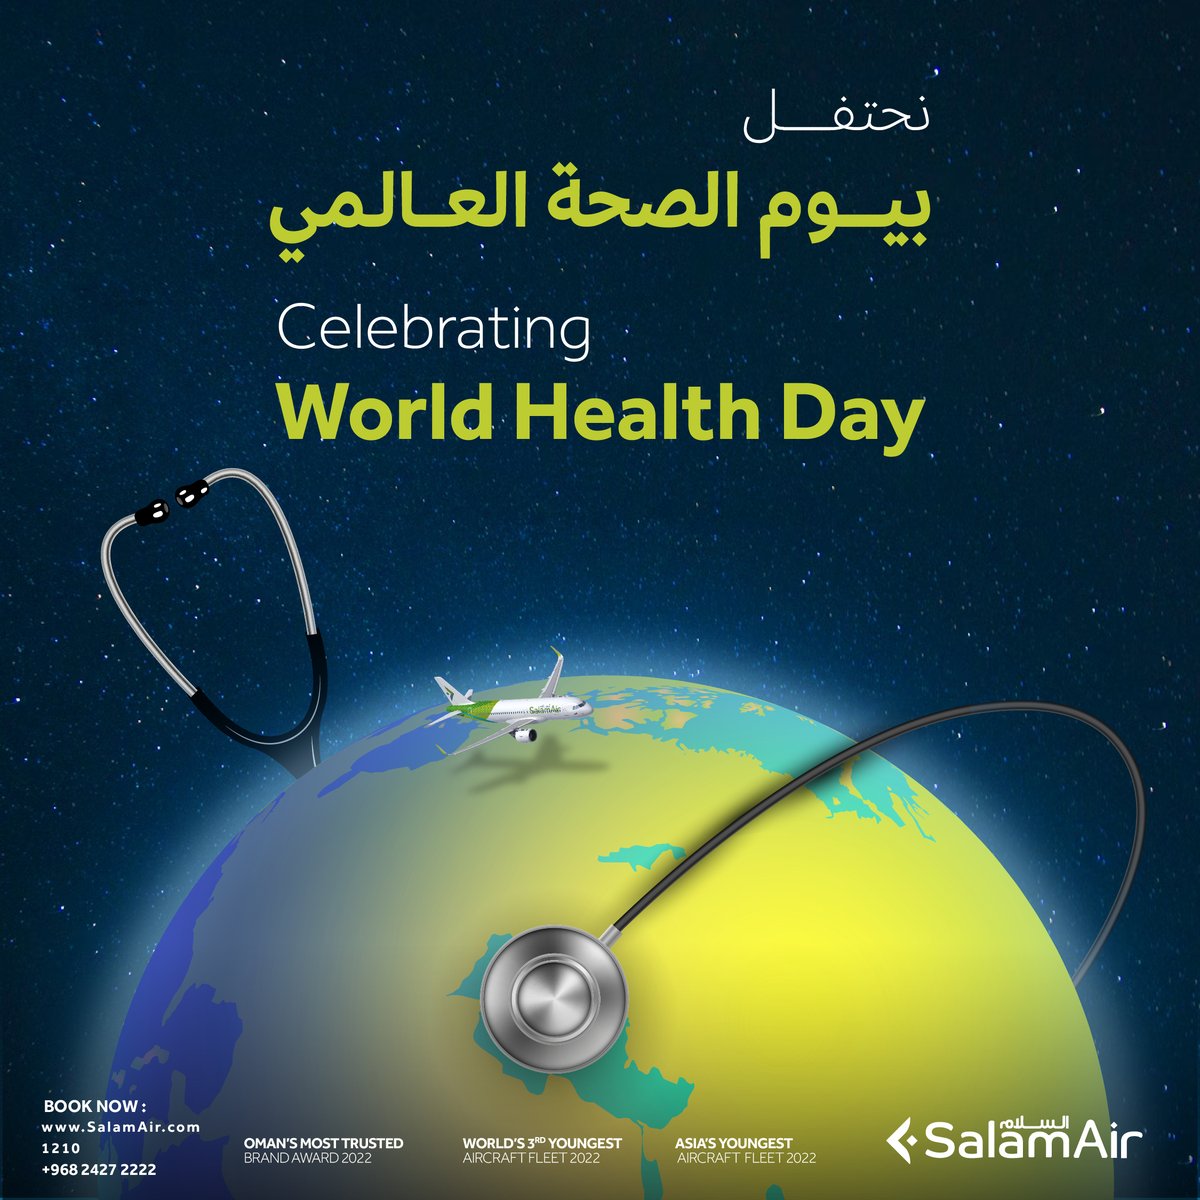 في يوم الصحة العالمي، نعمل على نشر الوعي لحياة أكثر صحة في جميع أنحاء العالم. 🌍💙 #طيران_السلام #يوم_الصحة